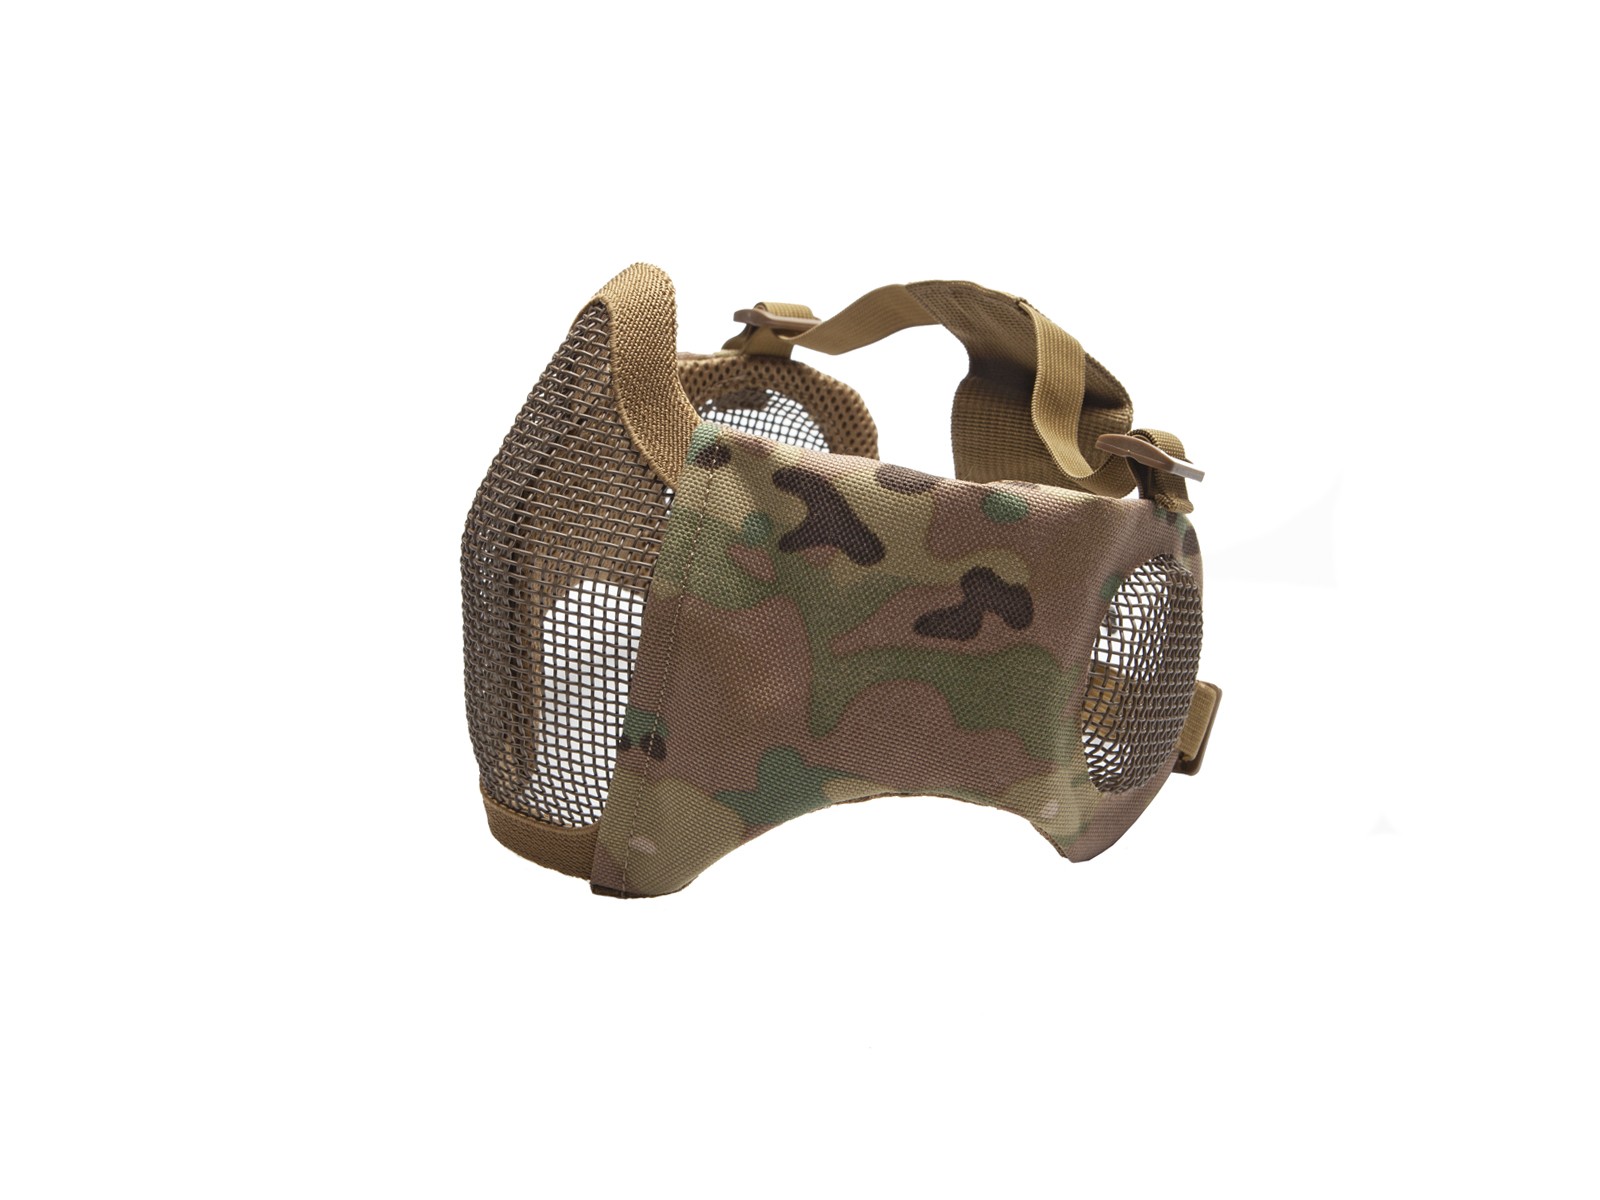 ASG - Masque de protection de visage et oreilles - Grillage et tissu -  Multicam - Elite Airsoft